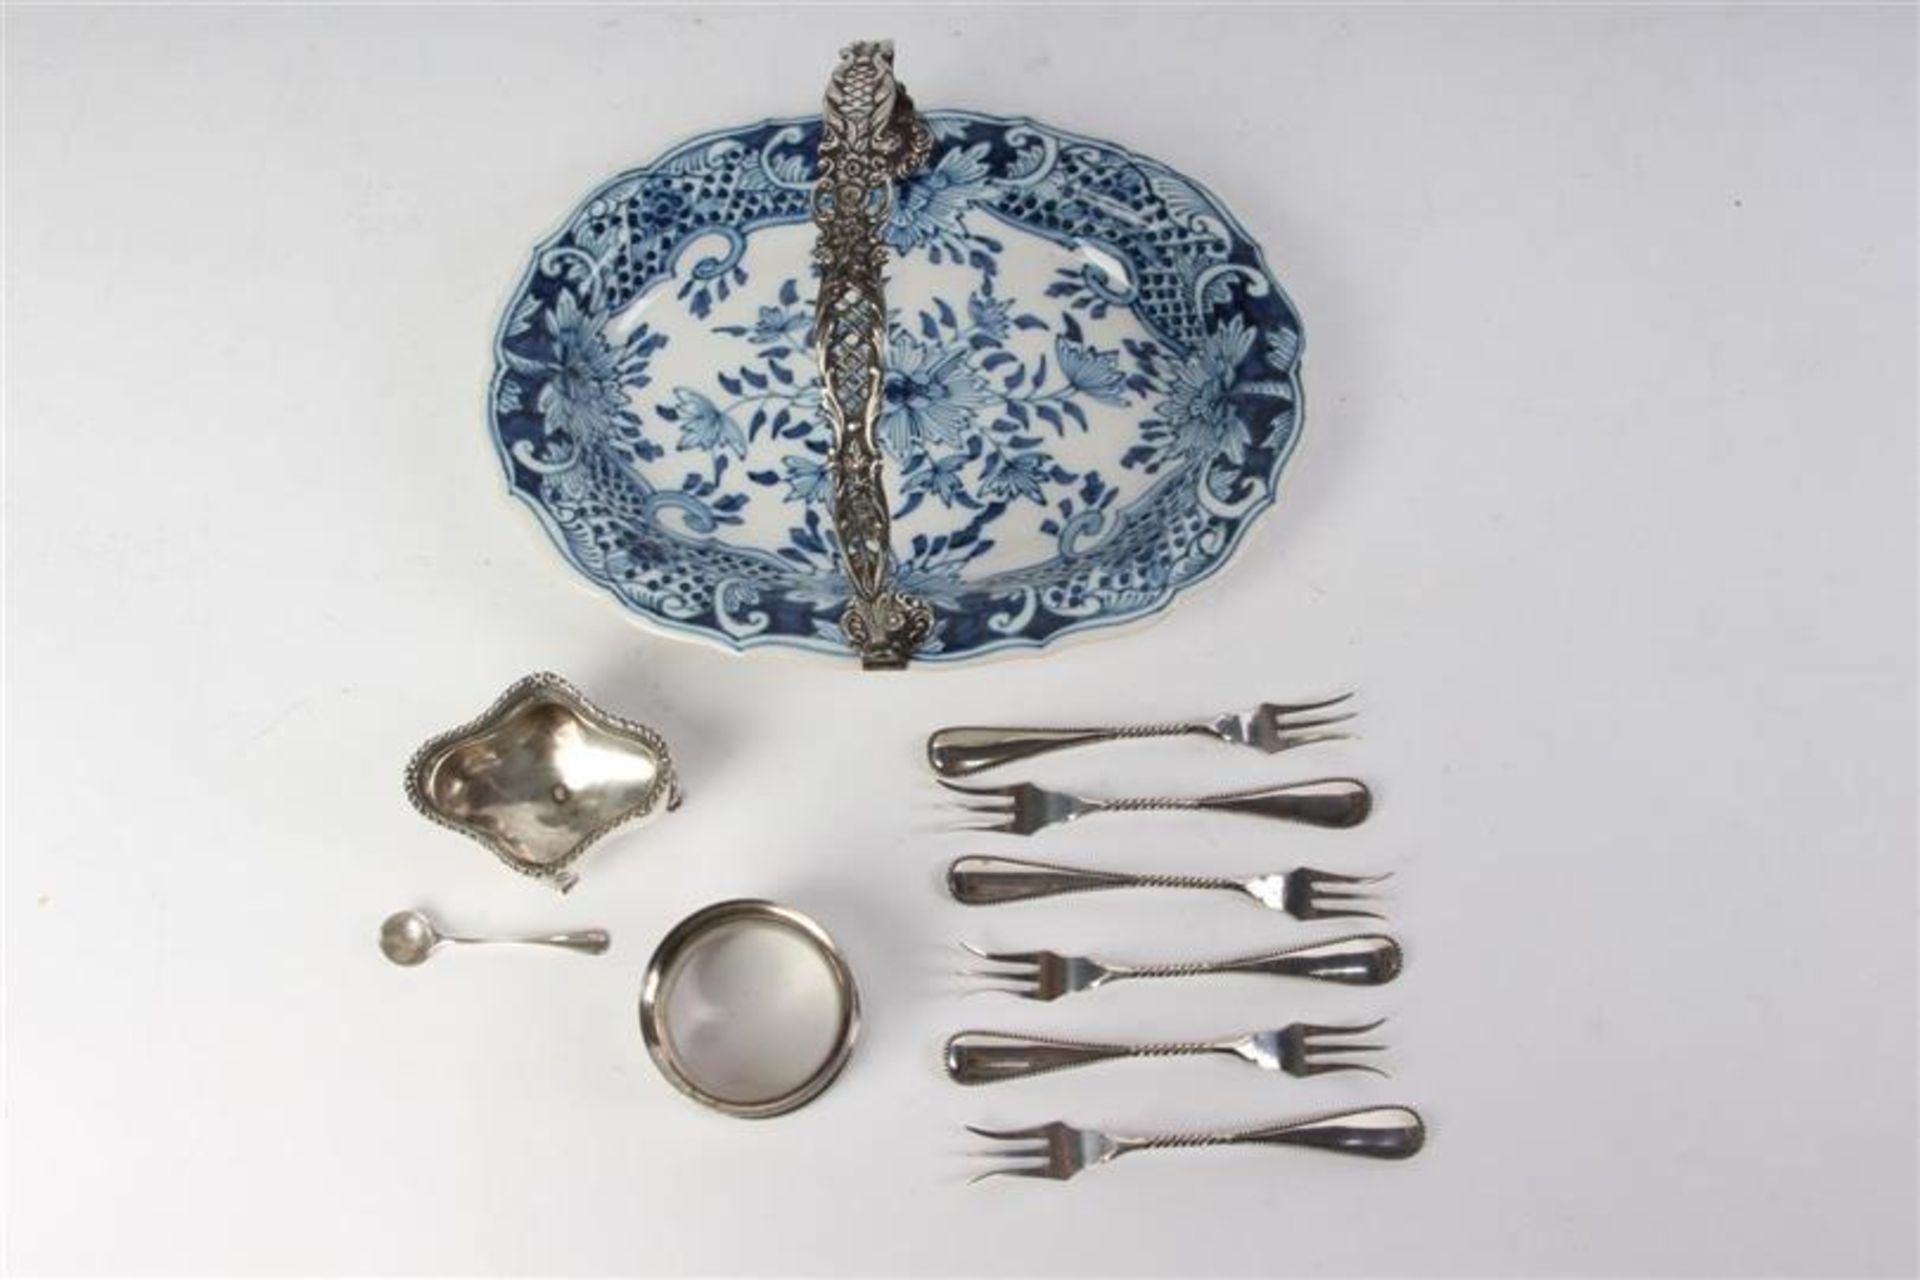 Makkum aardewerken schaaltje met zilveren hengsel, zes dito vorkjes, zoutvaatje en servetring.